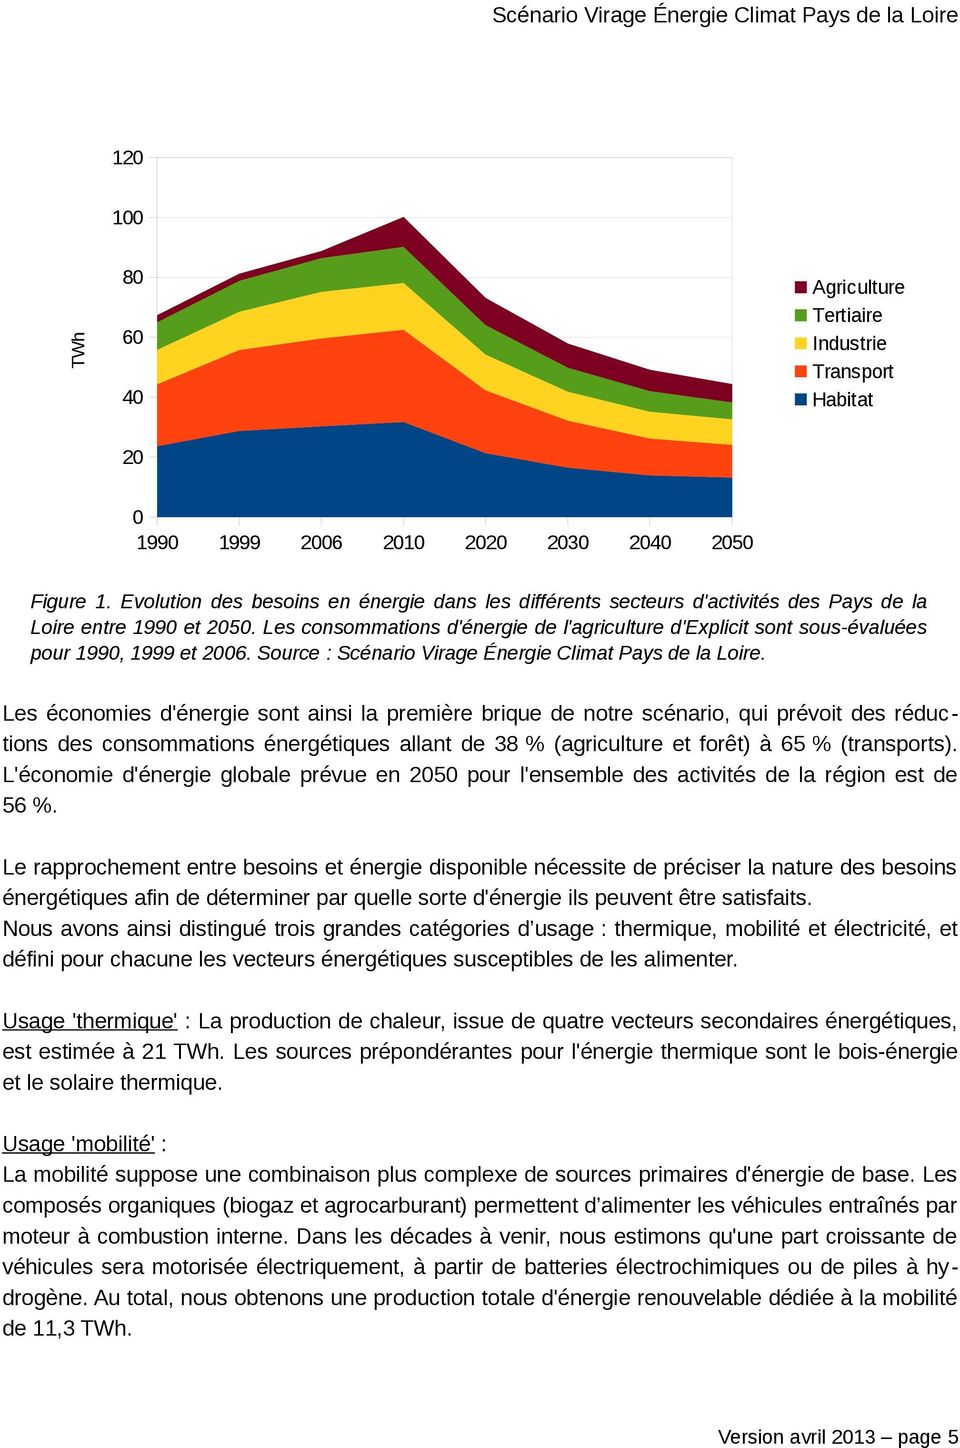 Les consommations d'énergie de l'agriculture d'explicit sont sous-évaluées pour 1990, 1999 et 2006. Source : Scénario Virage Énergie Climat Pays de la Loire.